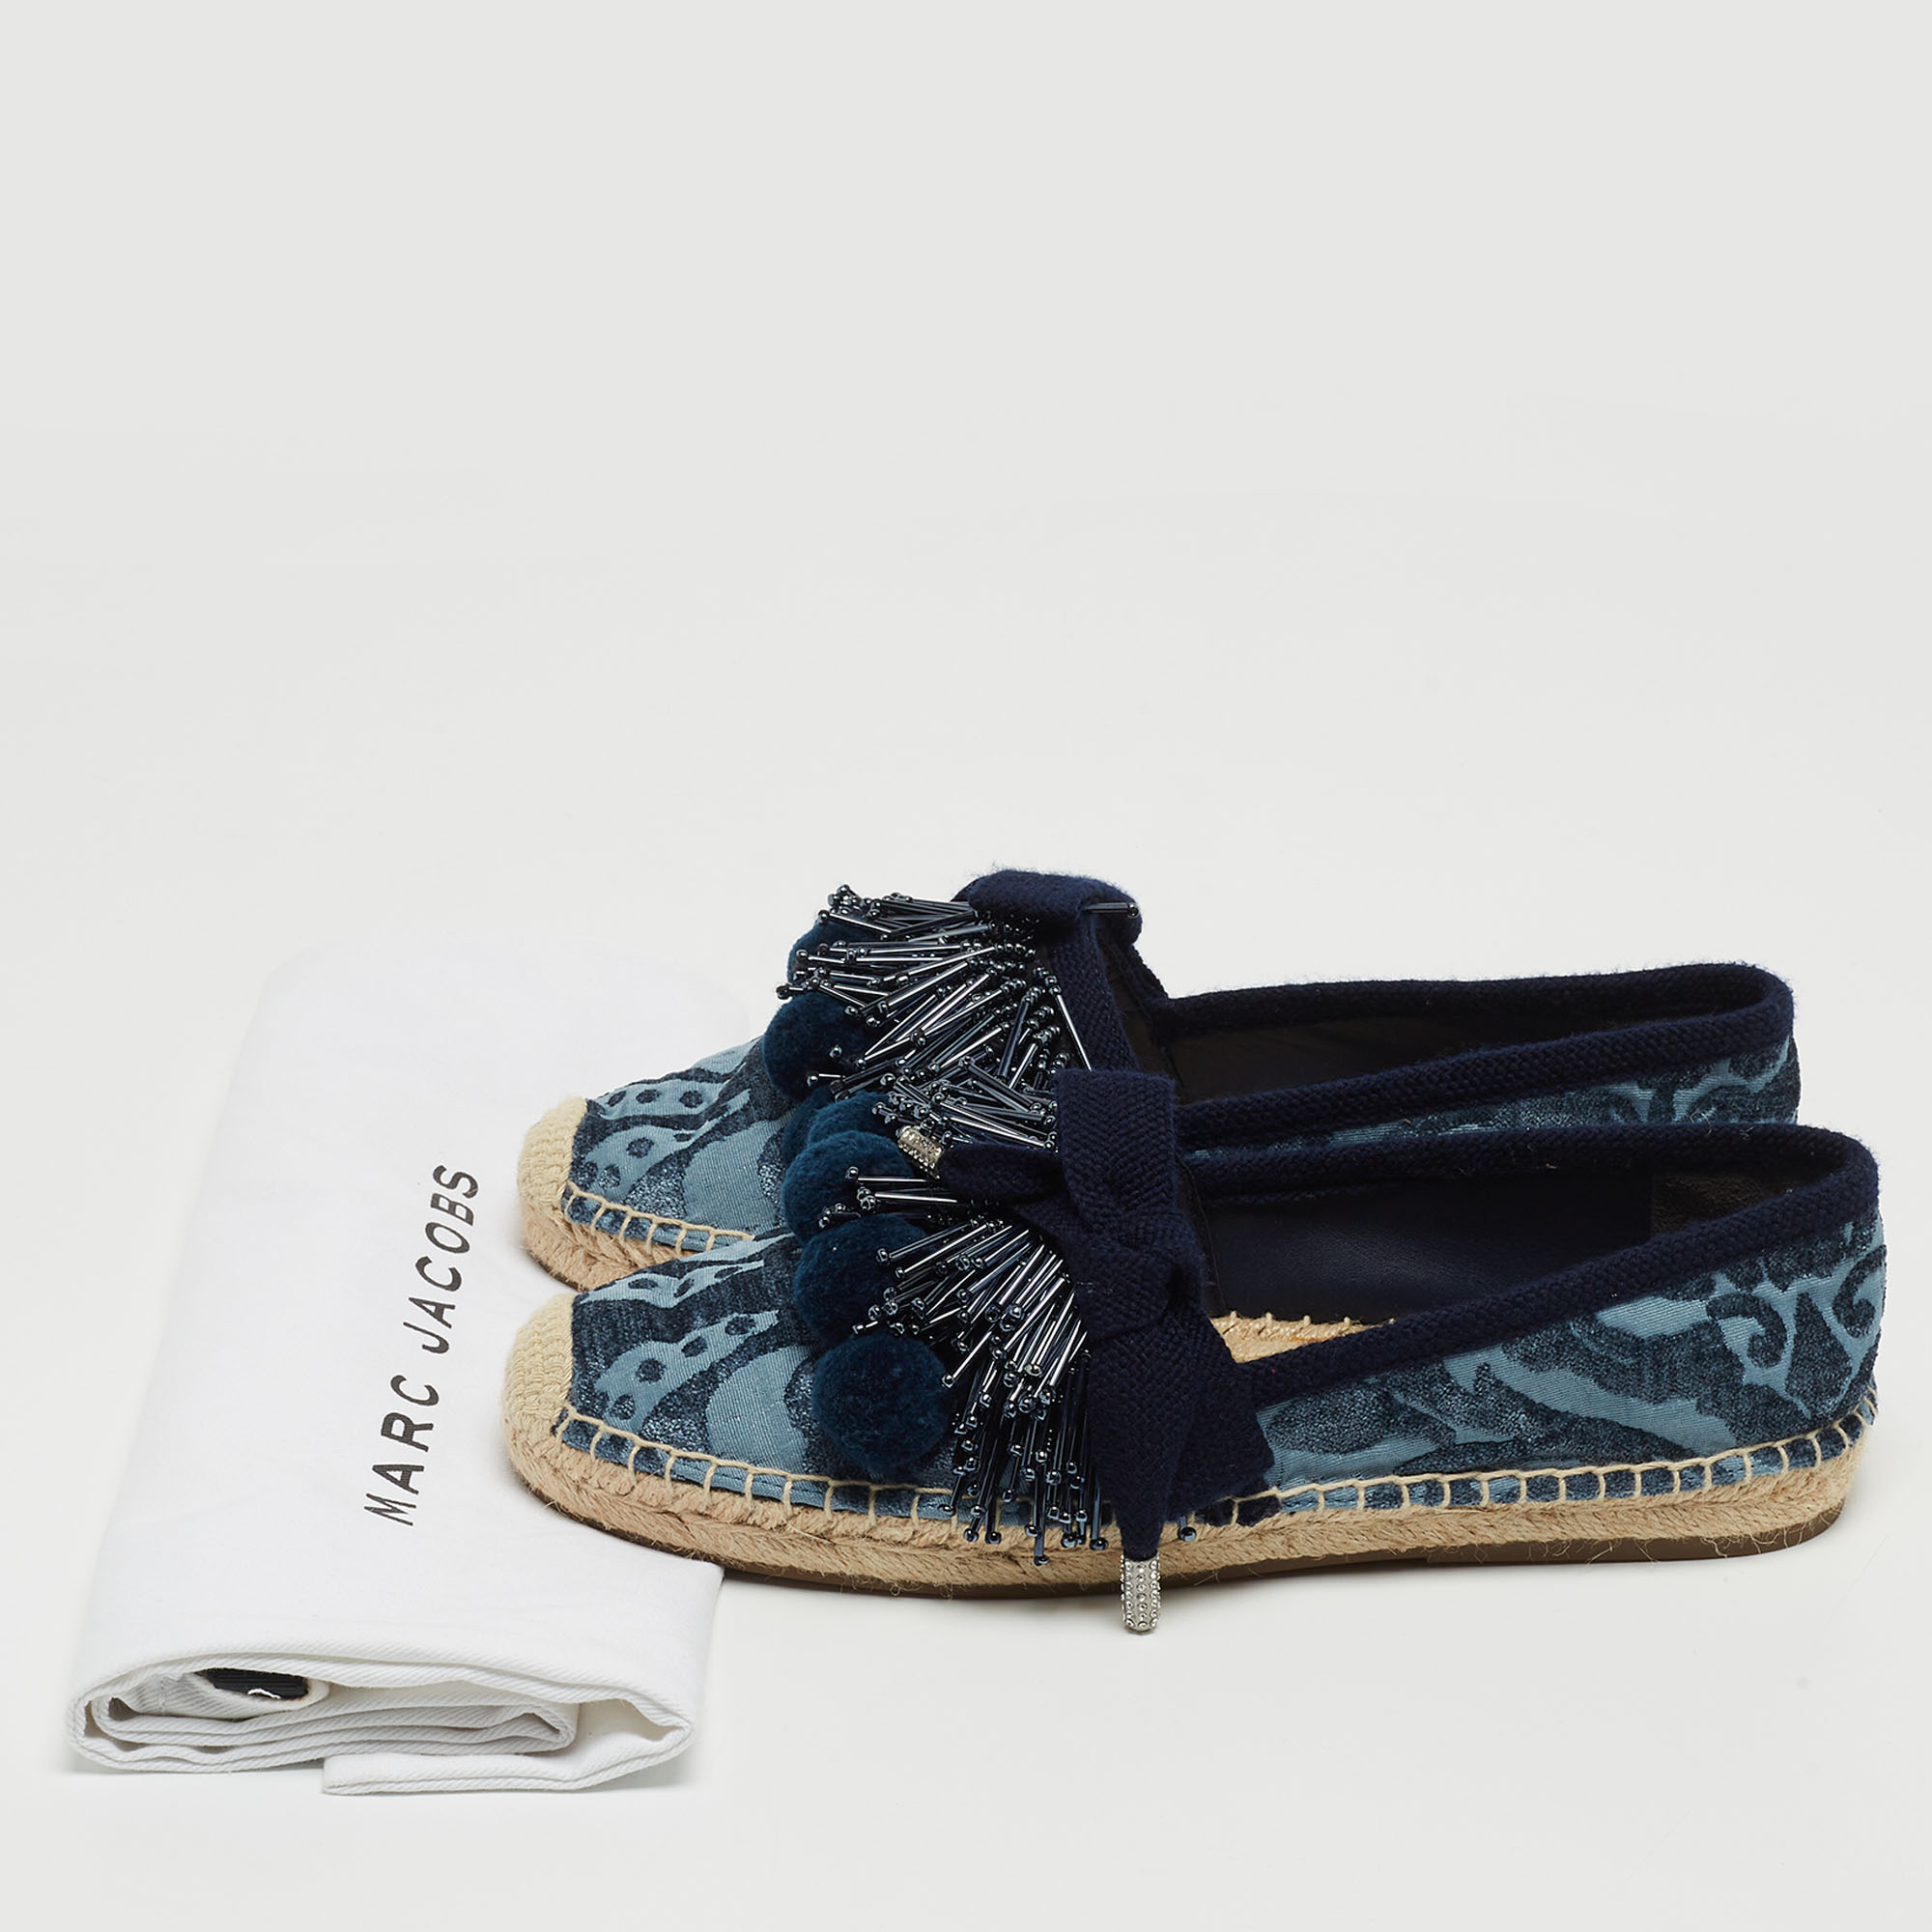 Marc Jacobs Blue Fabric Sienna Pom Pom Espadrille Flats Size 39